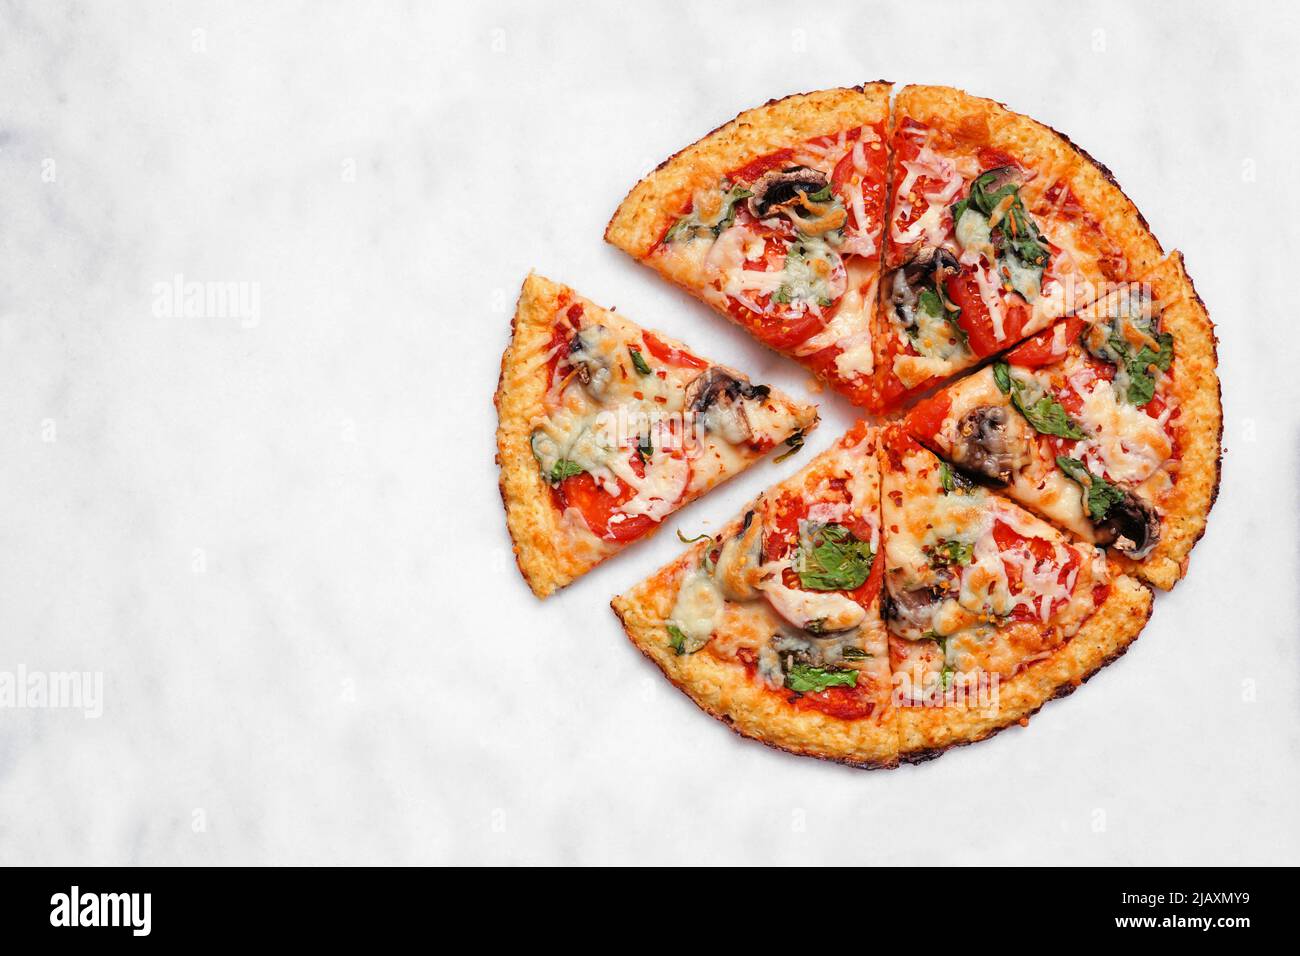 Gesunde, glutenfreie Blumenkohlkruste Pizza mit Tomaten, Pilzen und Spinat. Draufsicht mit geschnittenen Scheiben auf weißem Marmorhintergrund. Stockfoto